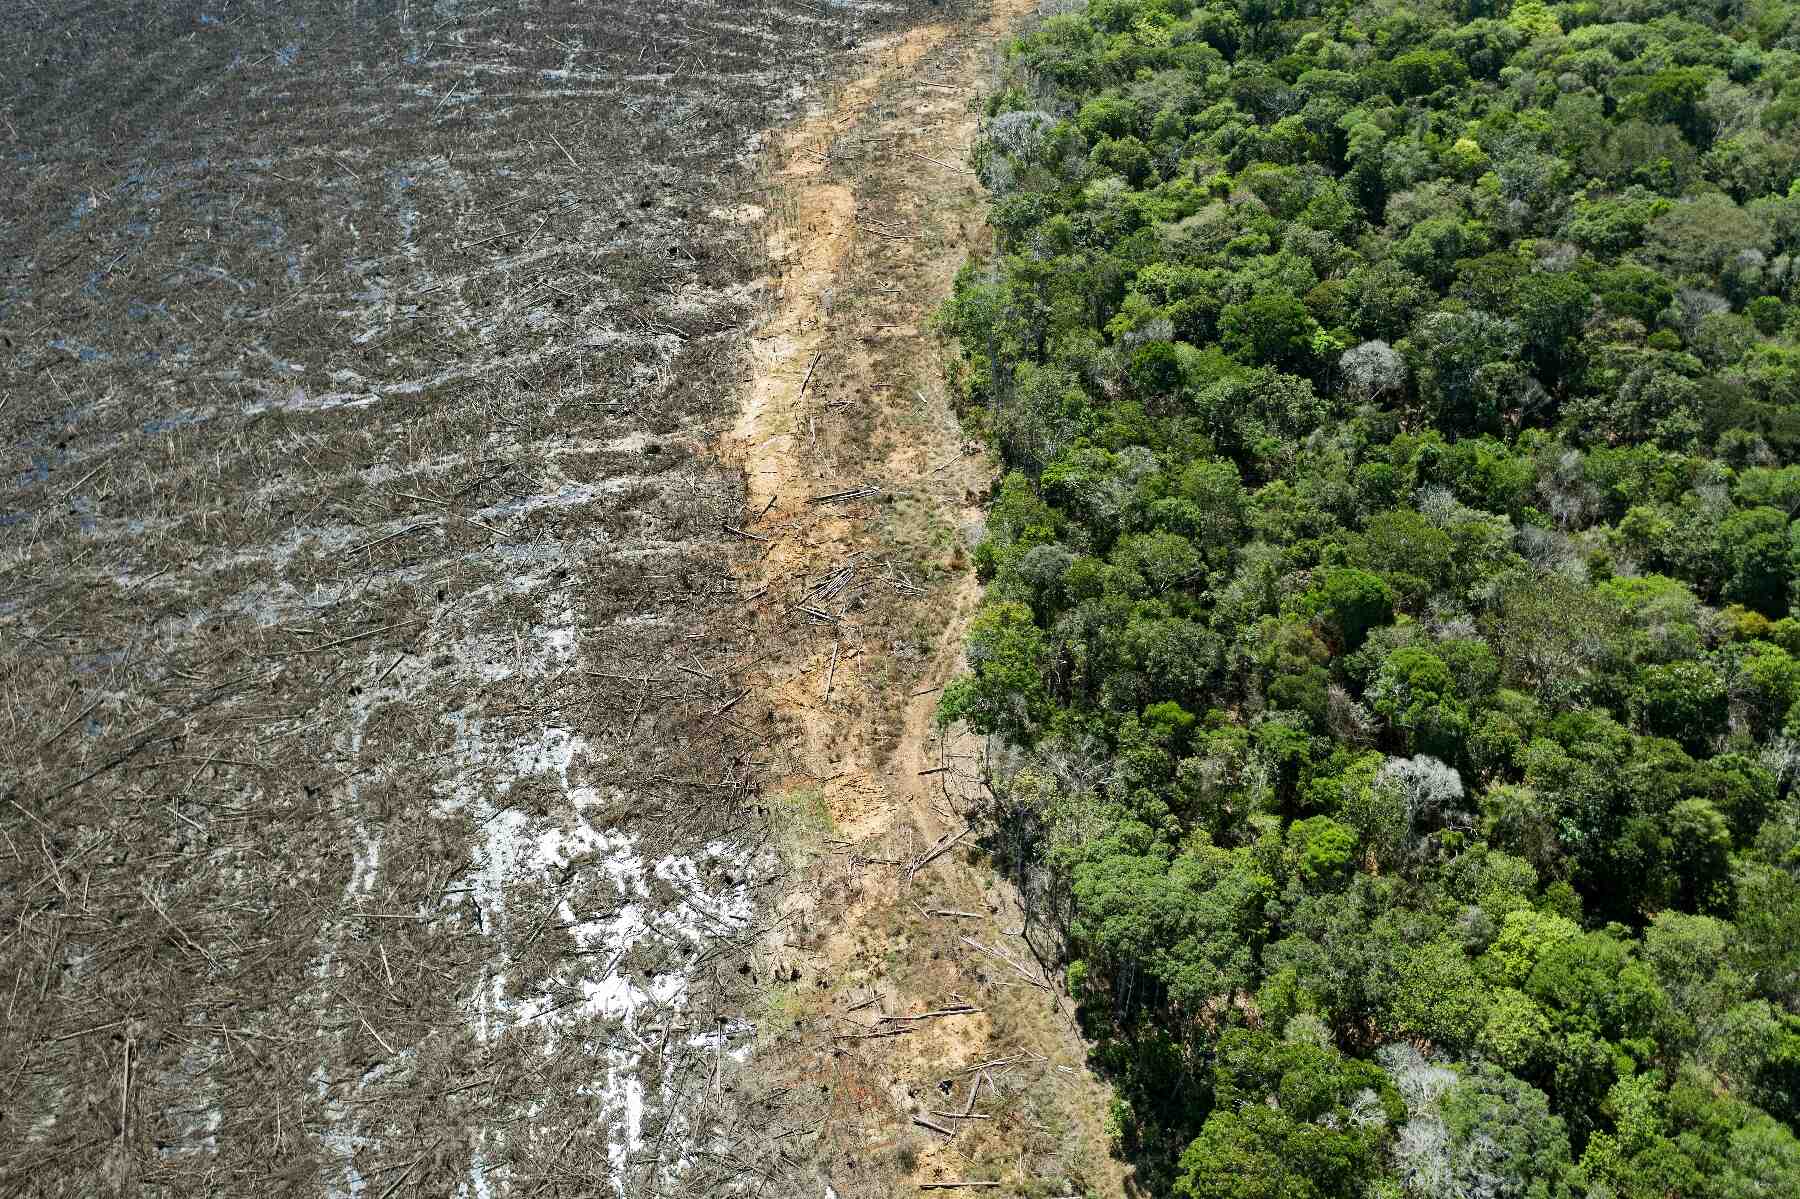 Quels sont les impacts environnementaux dus à la quantité de forêt ?